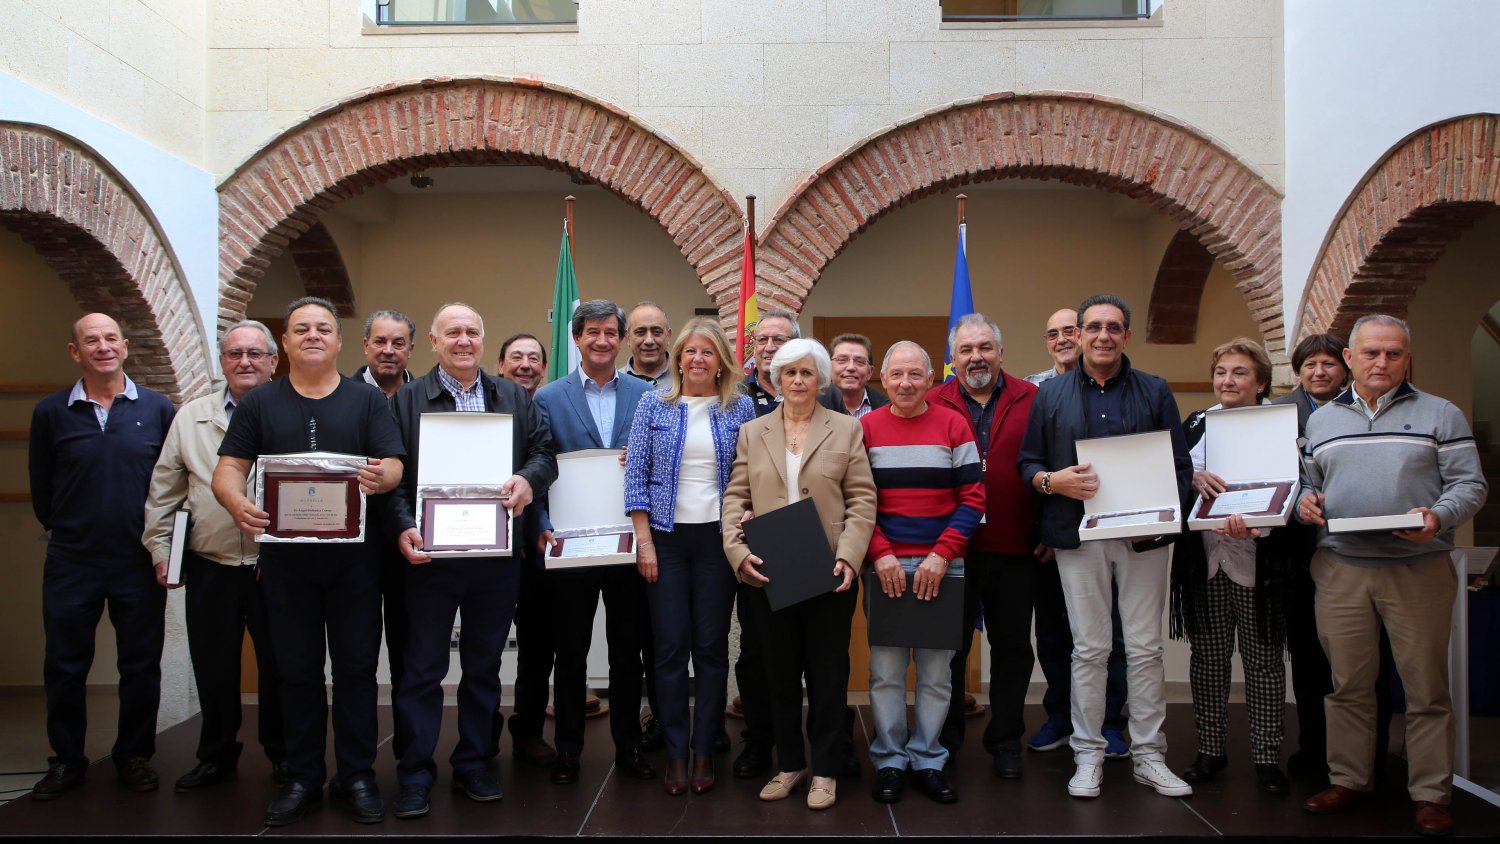 Marbella reconoce “el trabajo, esfuerzo y compromiso” de una treintena de empleados municipales jubilados